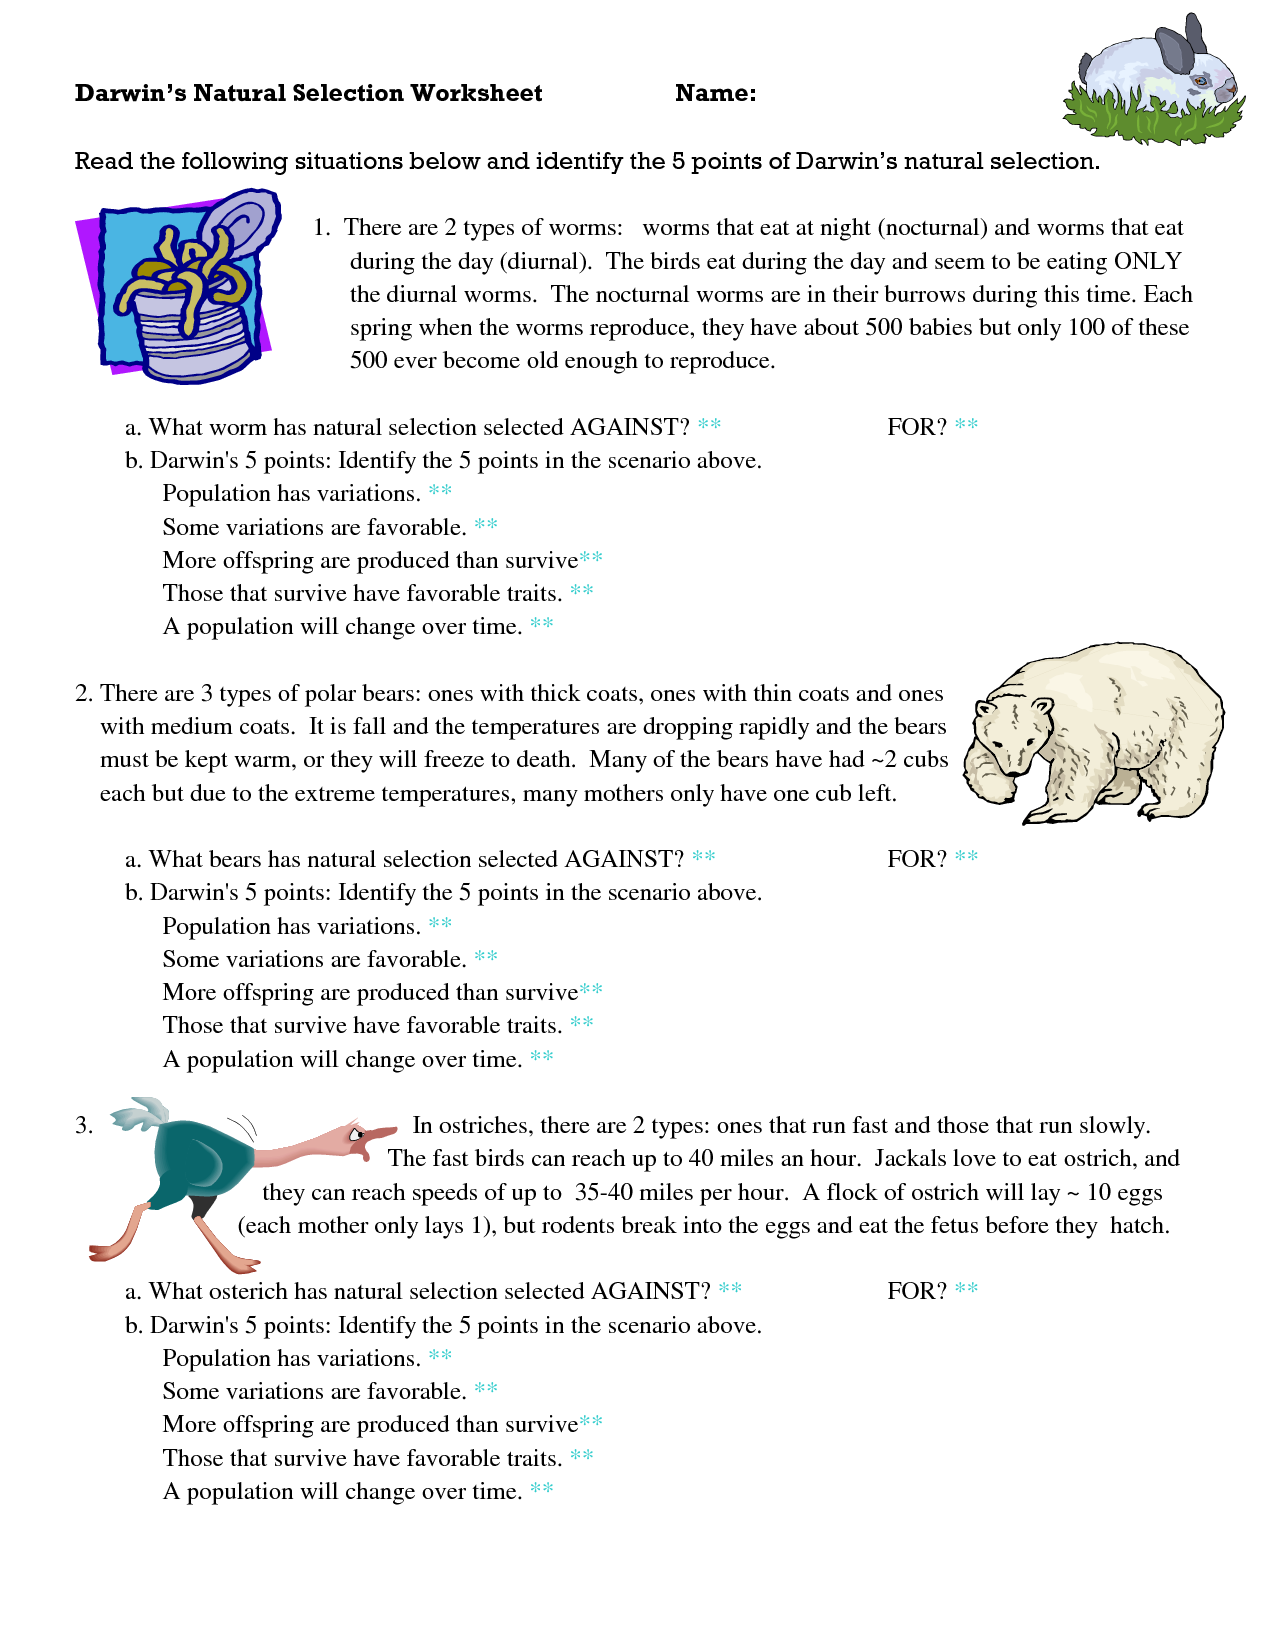 Darwins Natural Selection Worksheet Answers / Evolution Worksheet 1